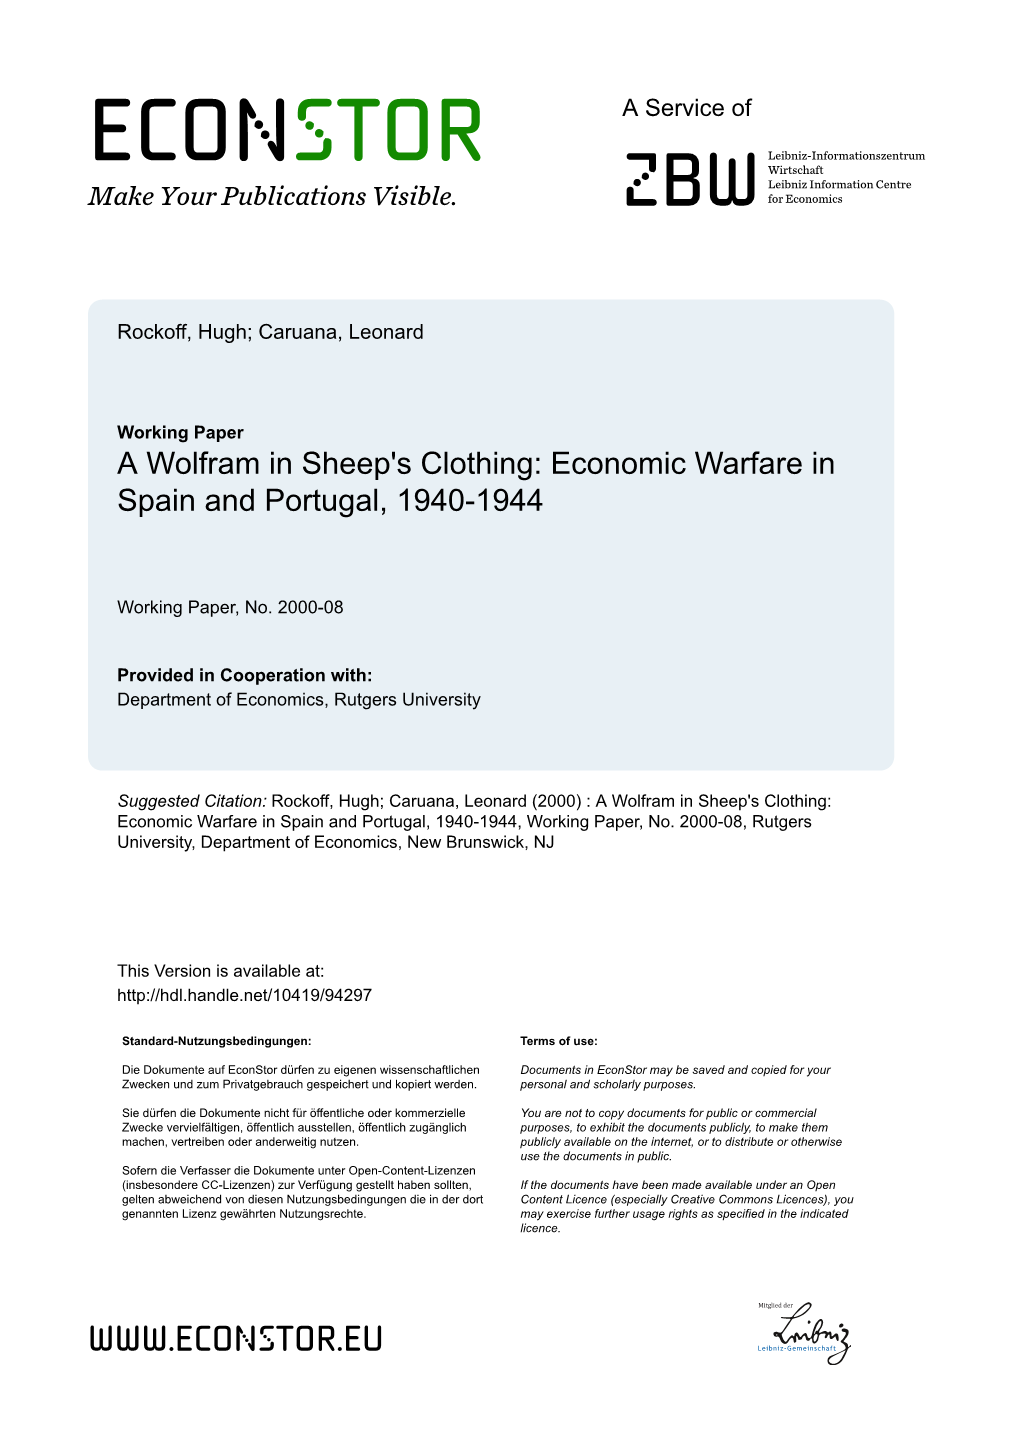 Economic Warfare in Spain and Portugal, 1940-1944